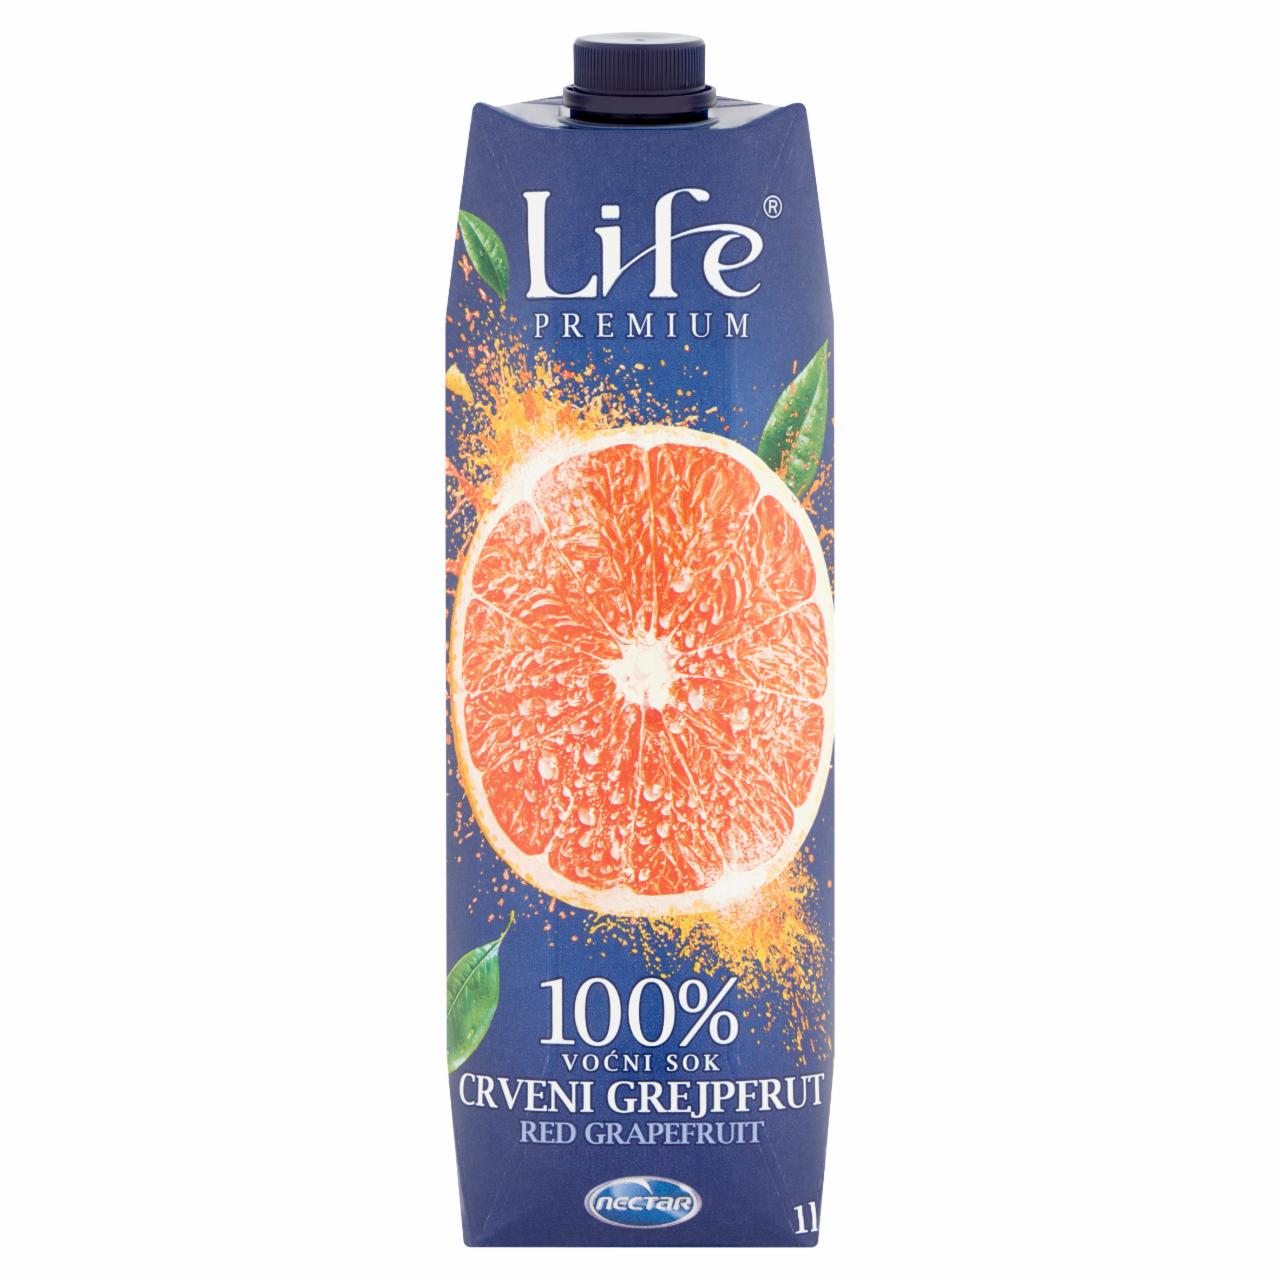 Képek - Life Premium 100% vörös grépfrút gyümölcsital 1 l